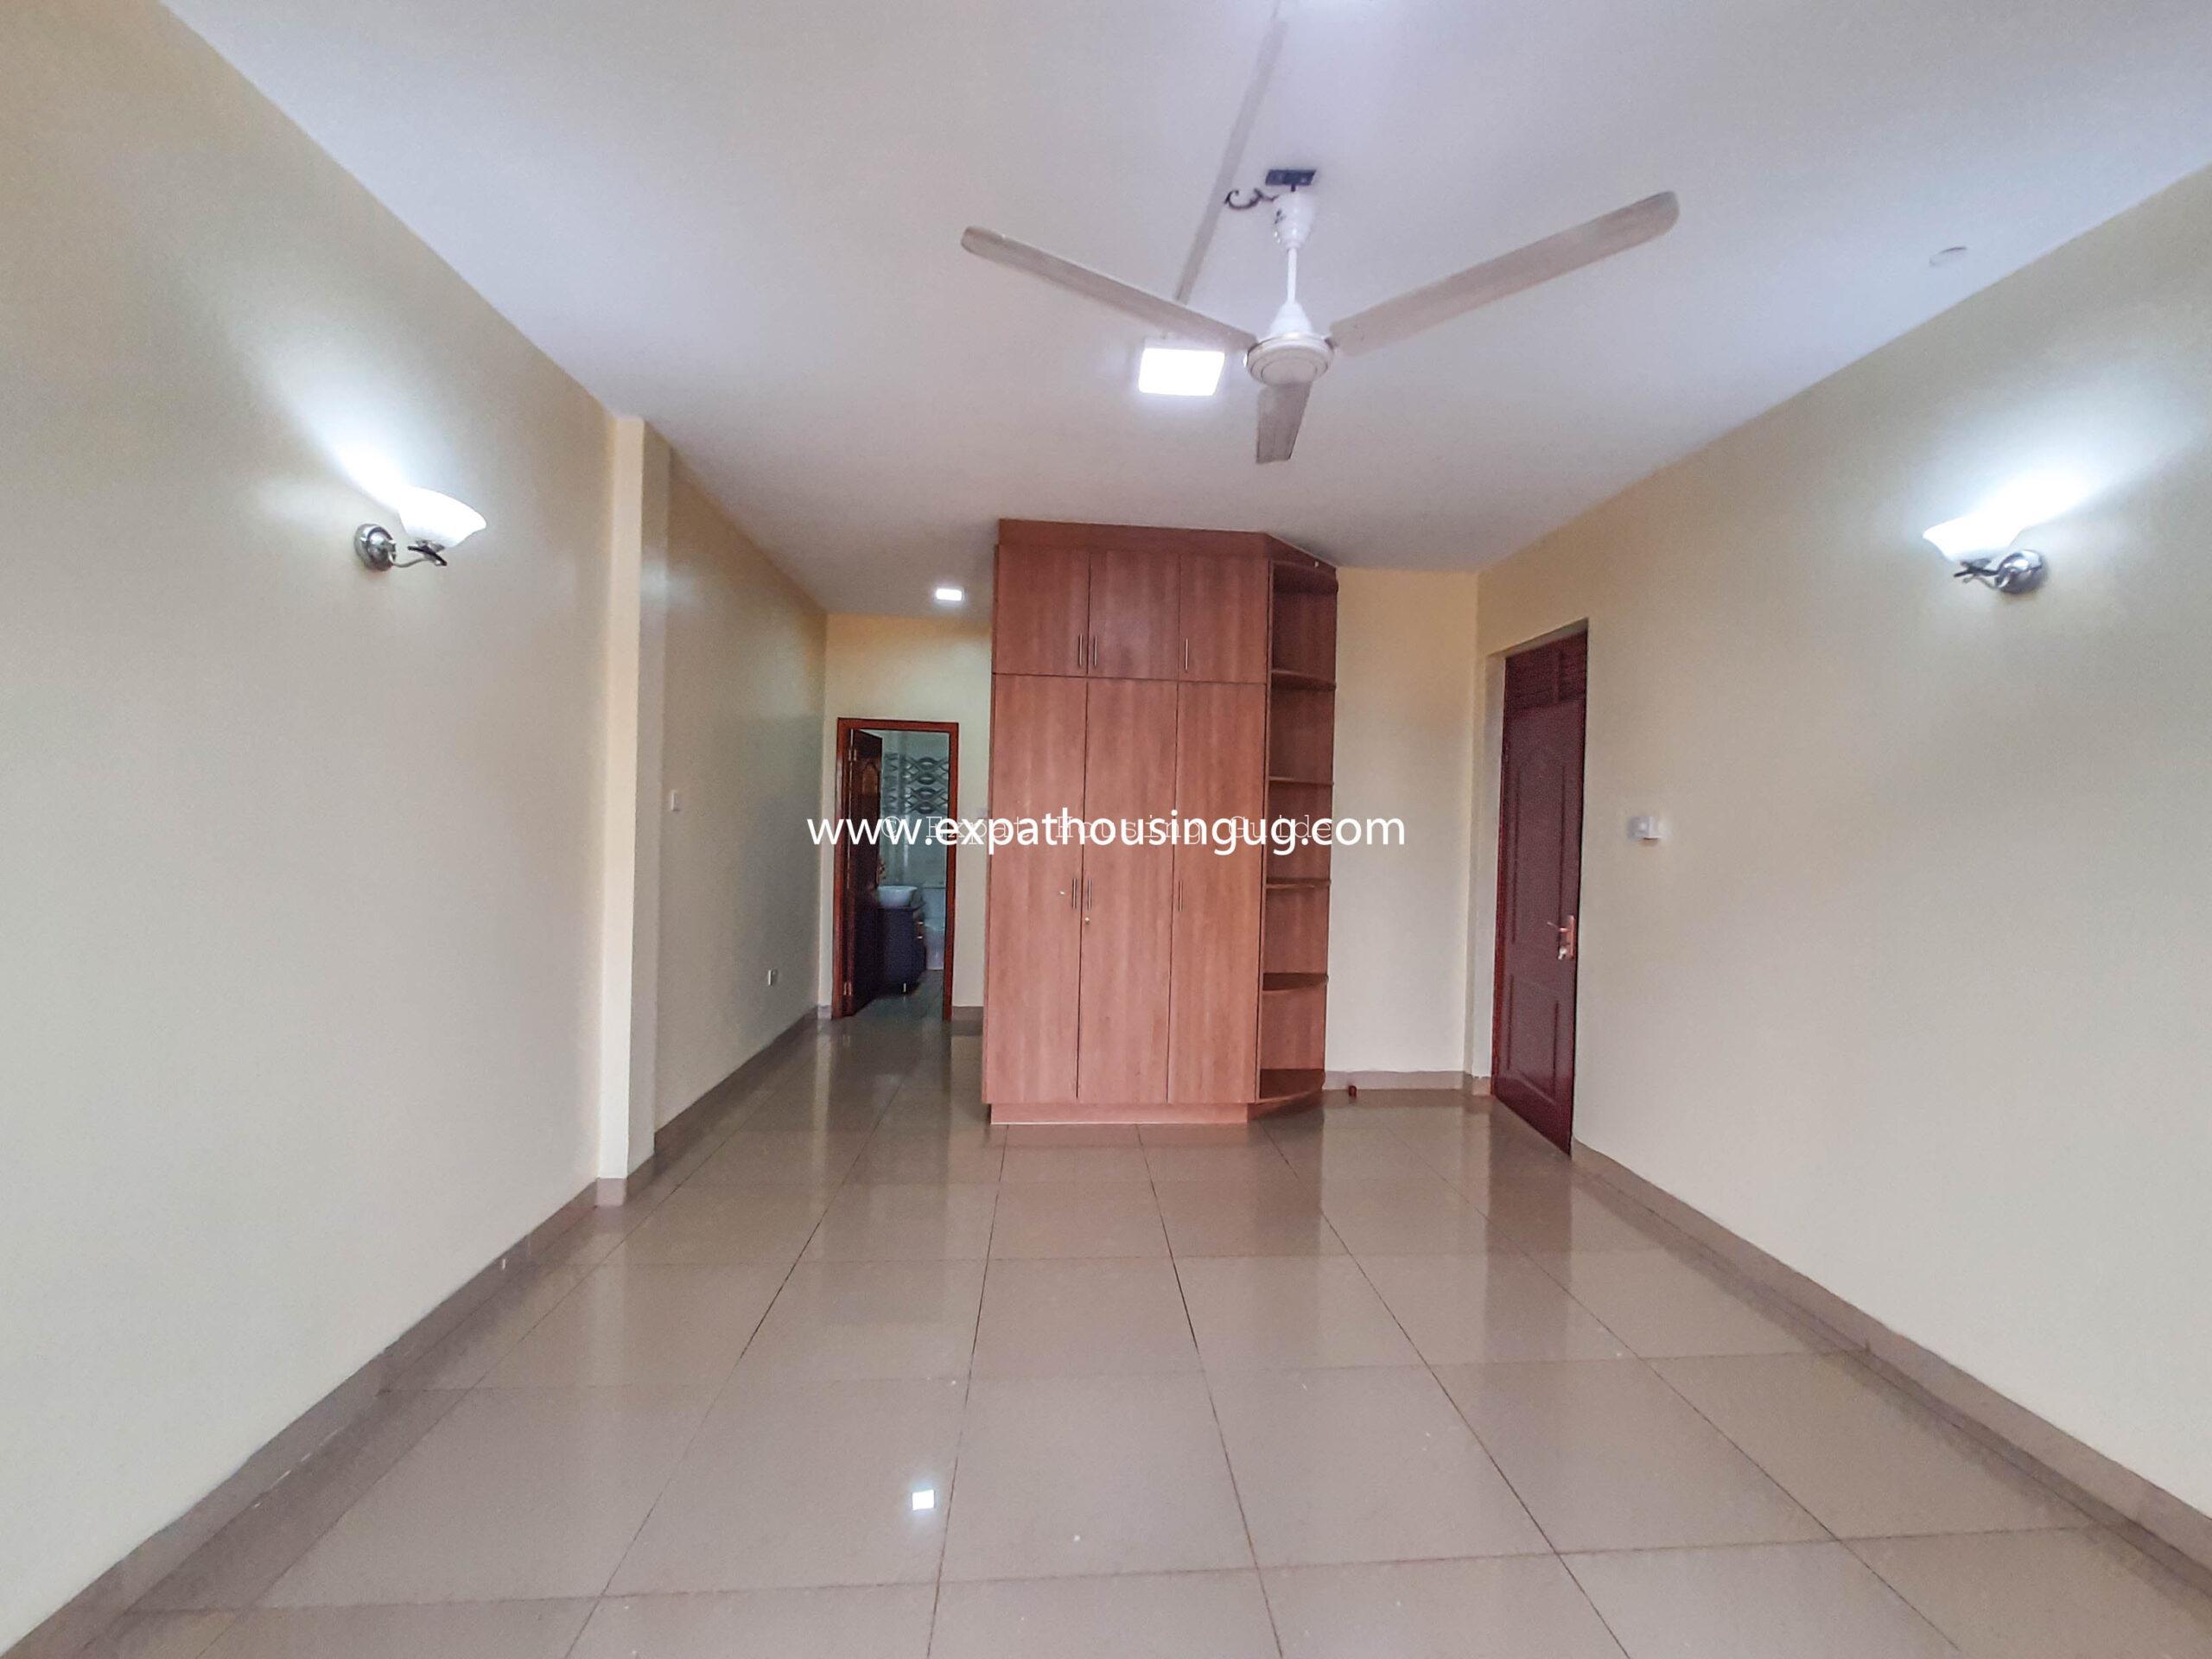 Apartment for rent in Mawanda rd Kampala